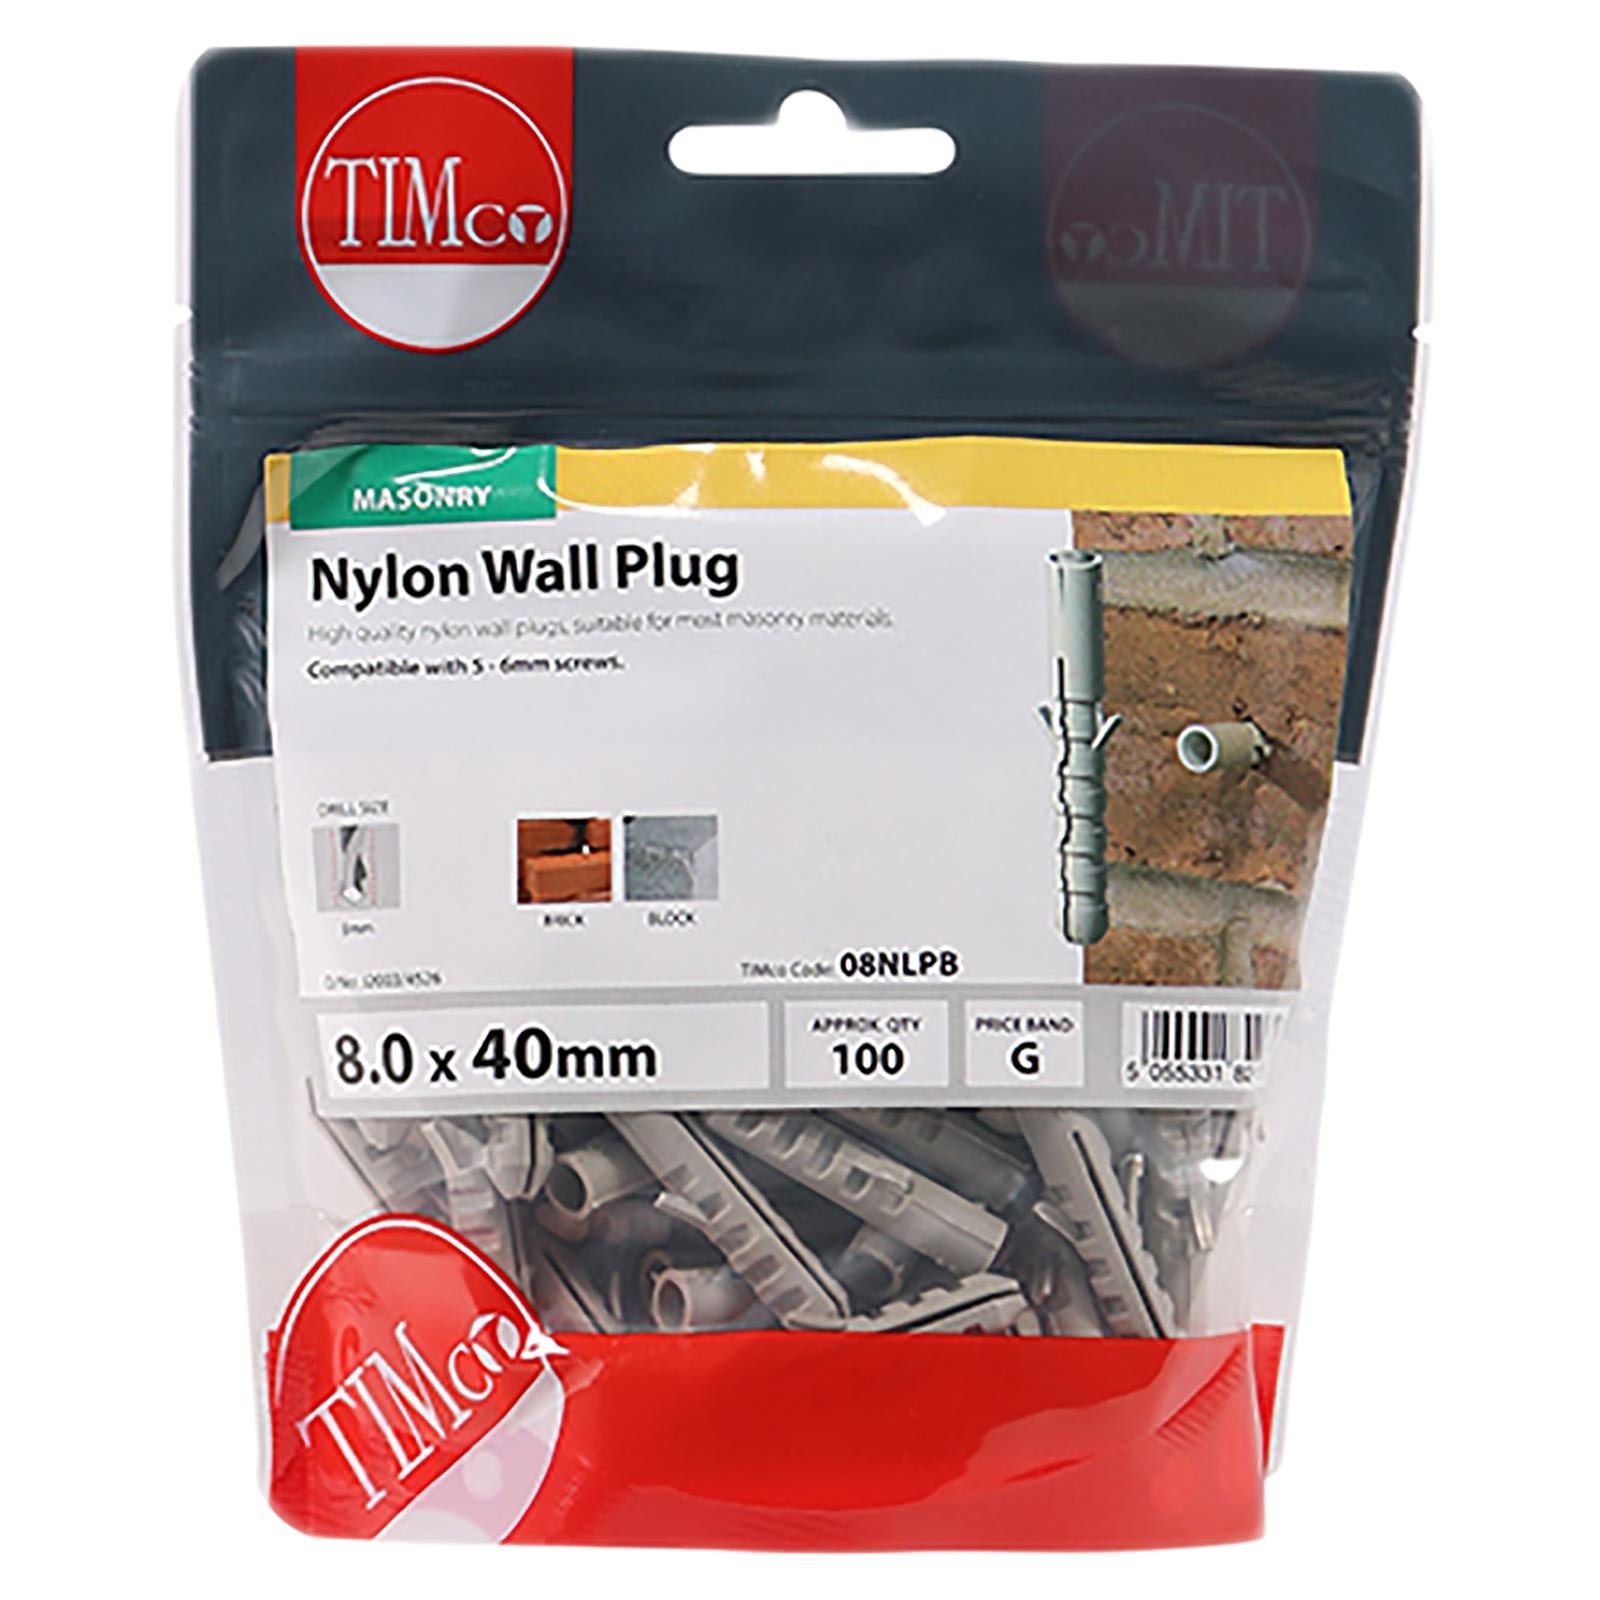 TIMCO Nylon Wall Plug for Coach Screws into Masonry TIMbag Anti Rotation Lug